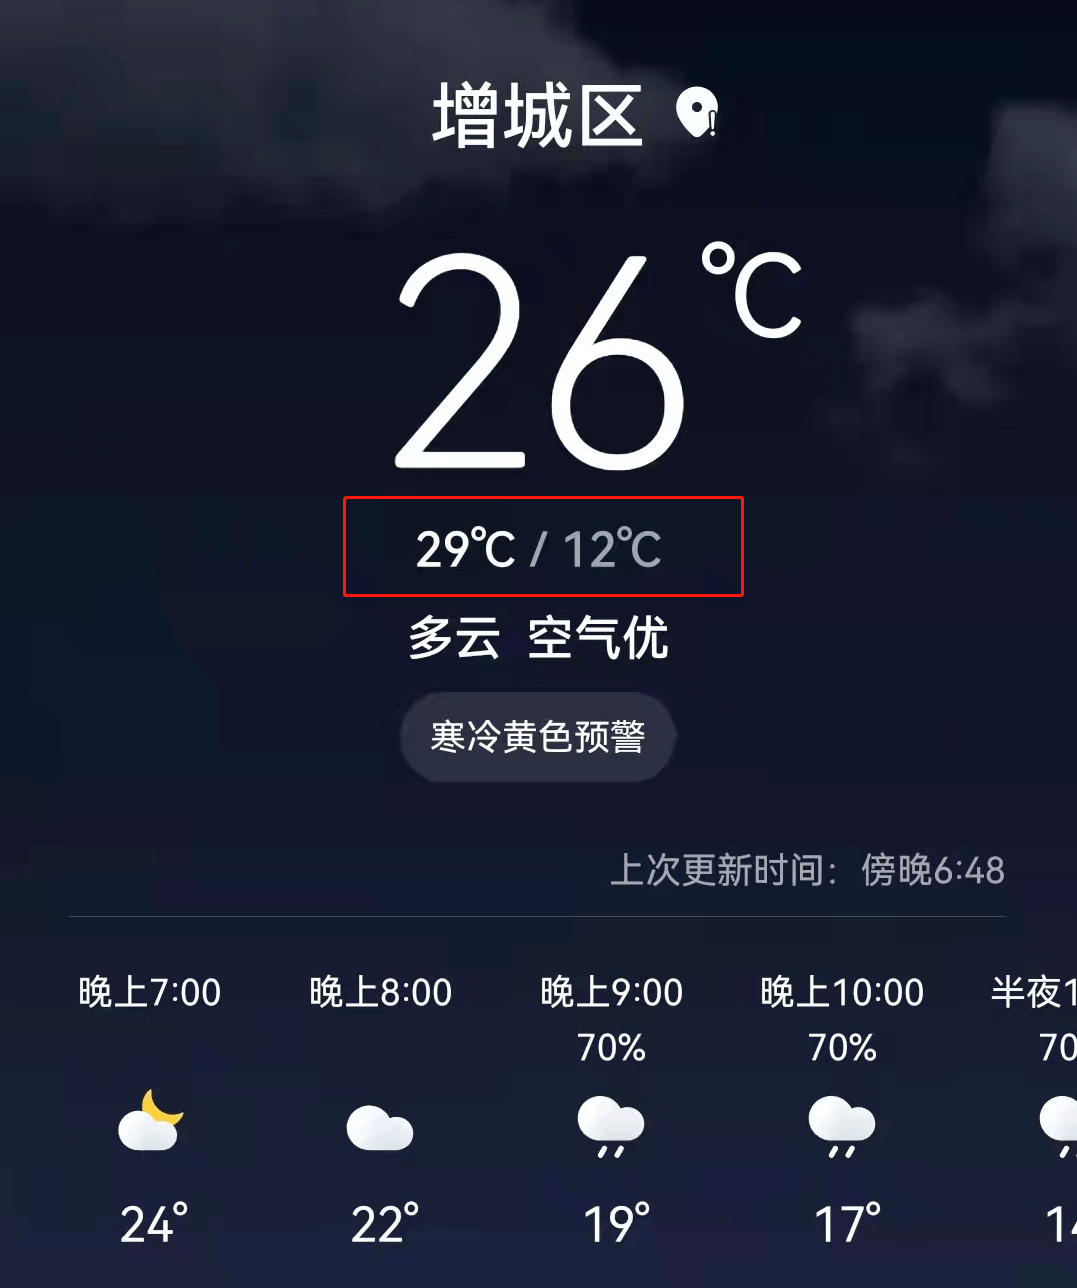 另外,明天出门记得要带伞哦~图片,素材来源:@广州天气,@广东天气,羊城